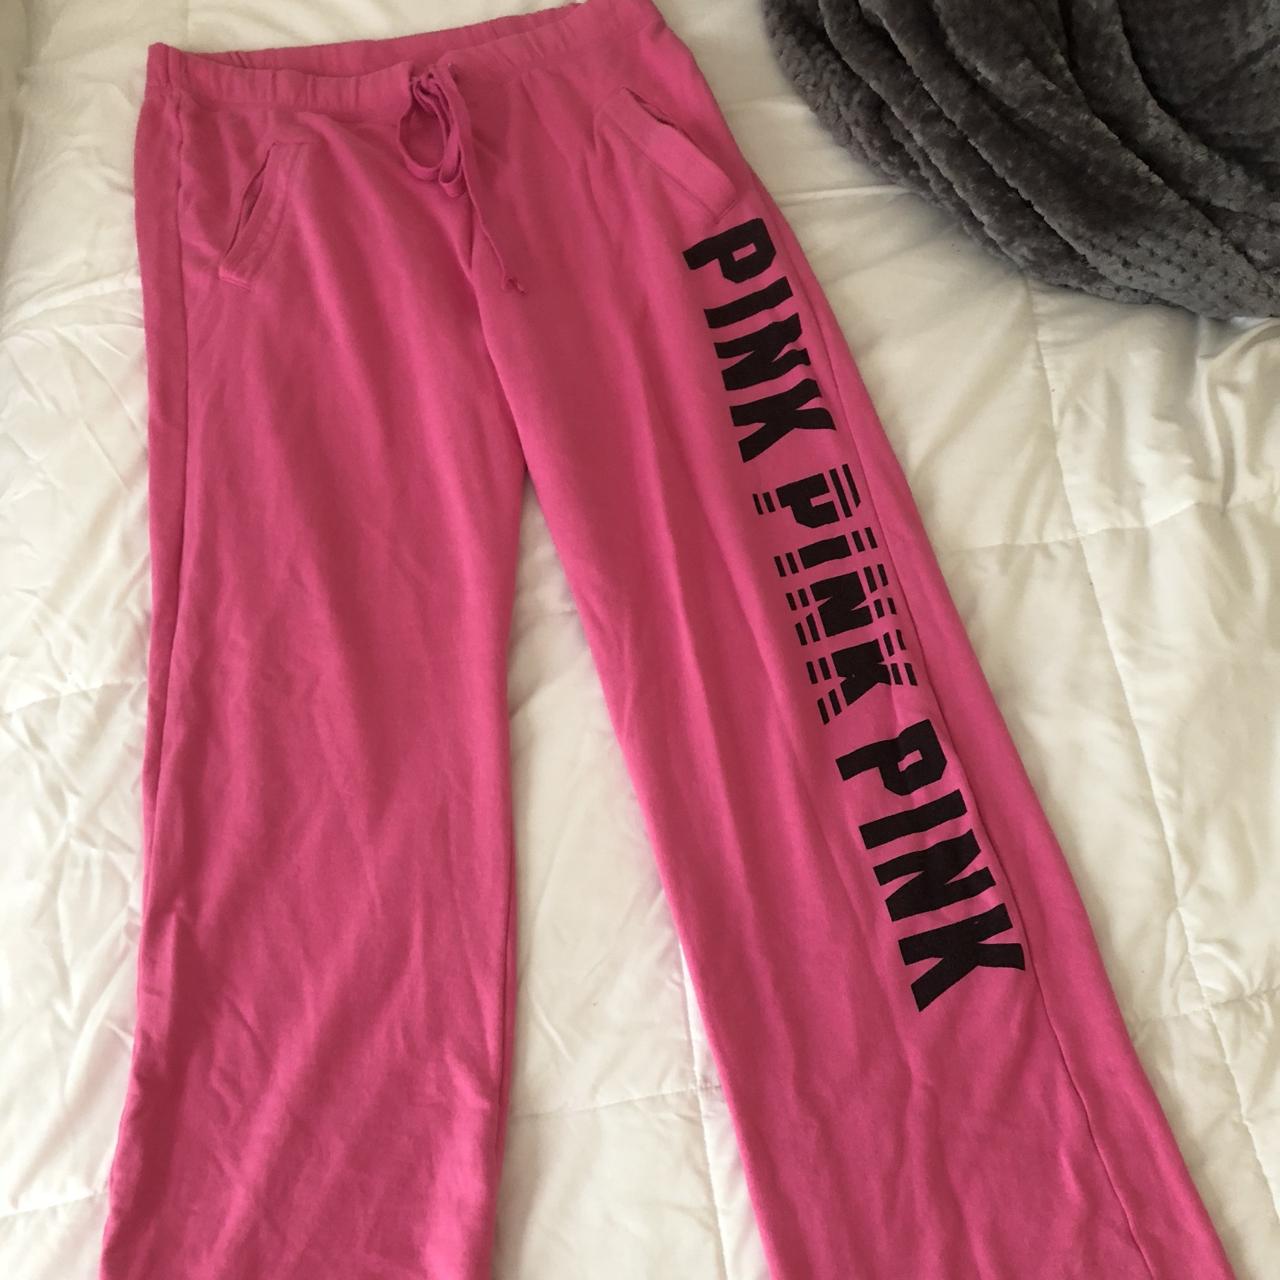 Victorias secret pink sweat pants #vs #sweatpants - Depop